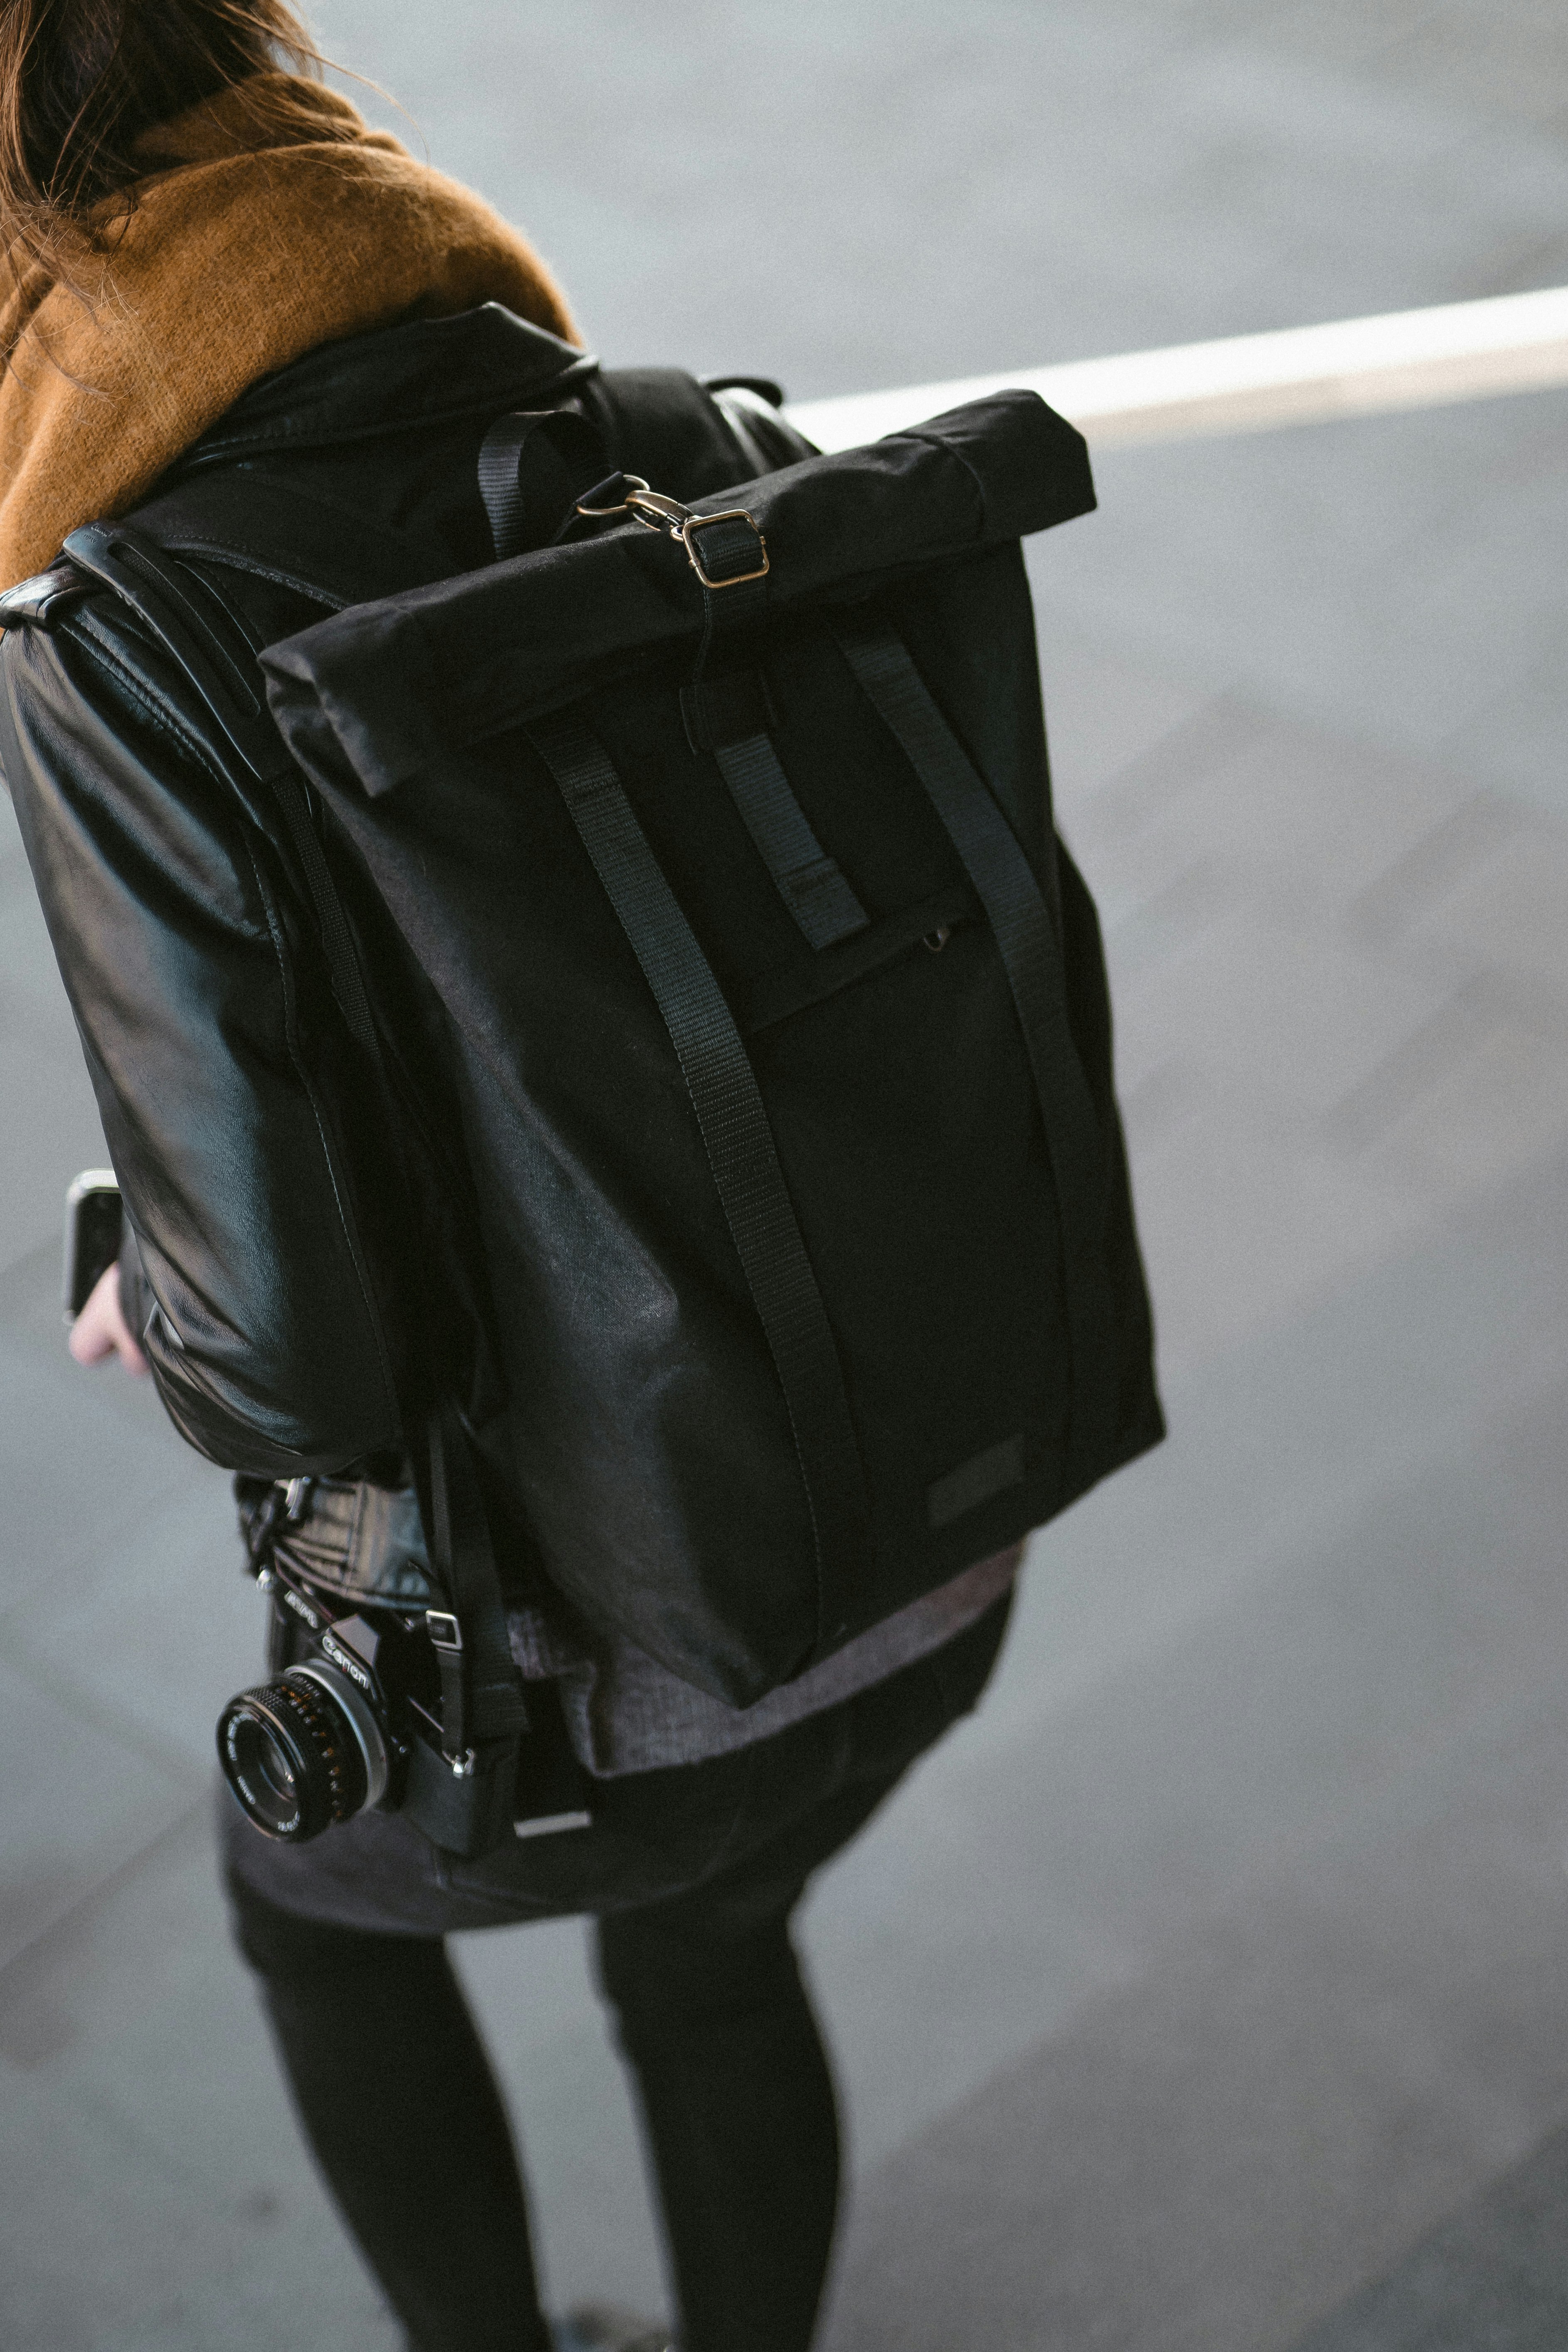 black backpack and DSLR camera